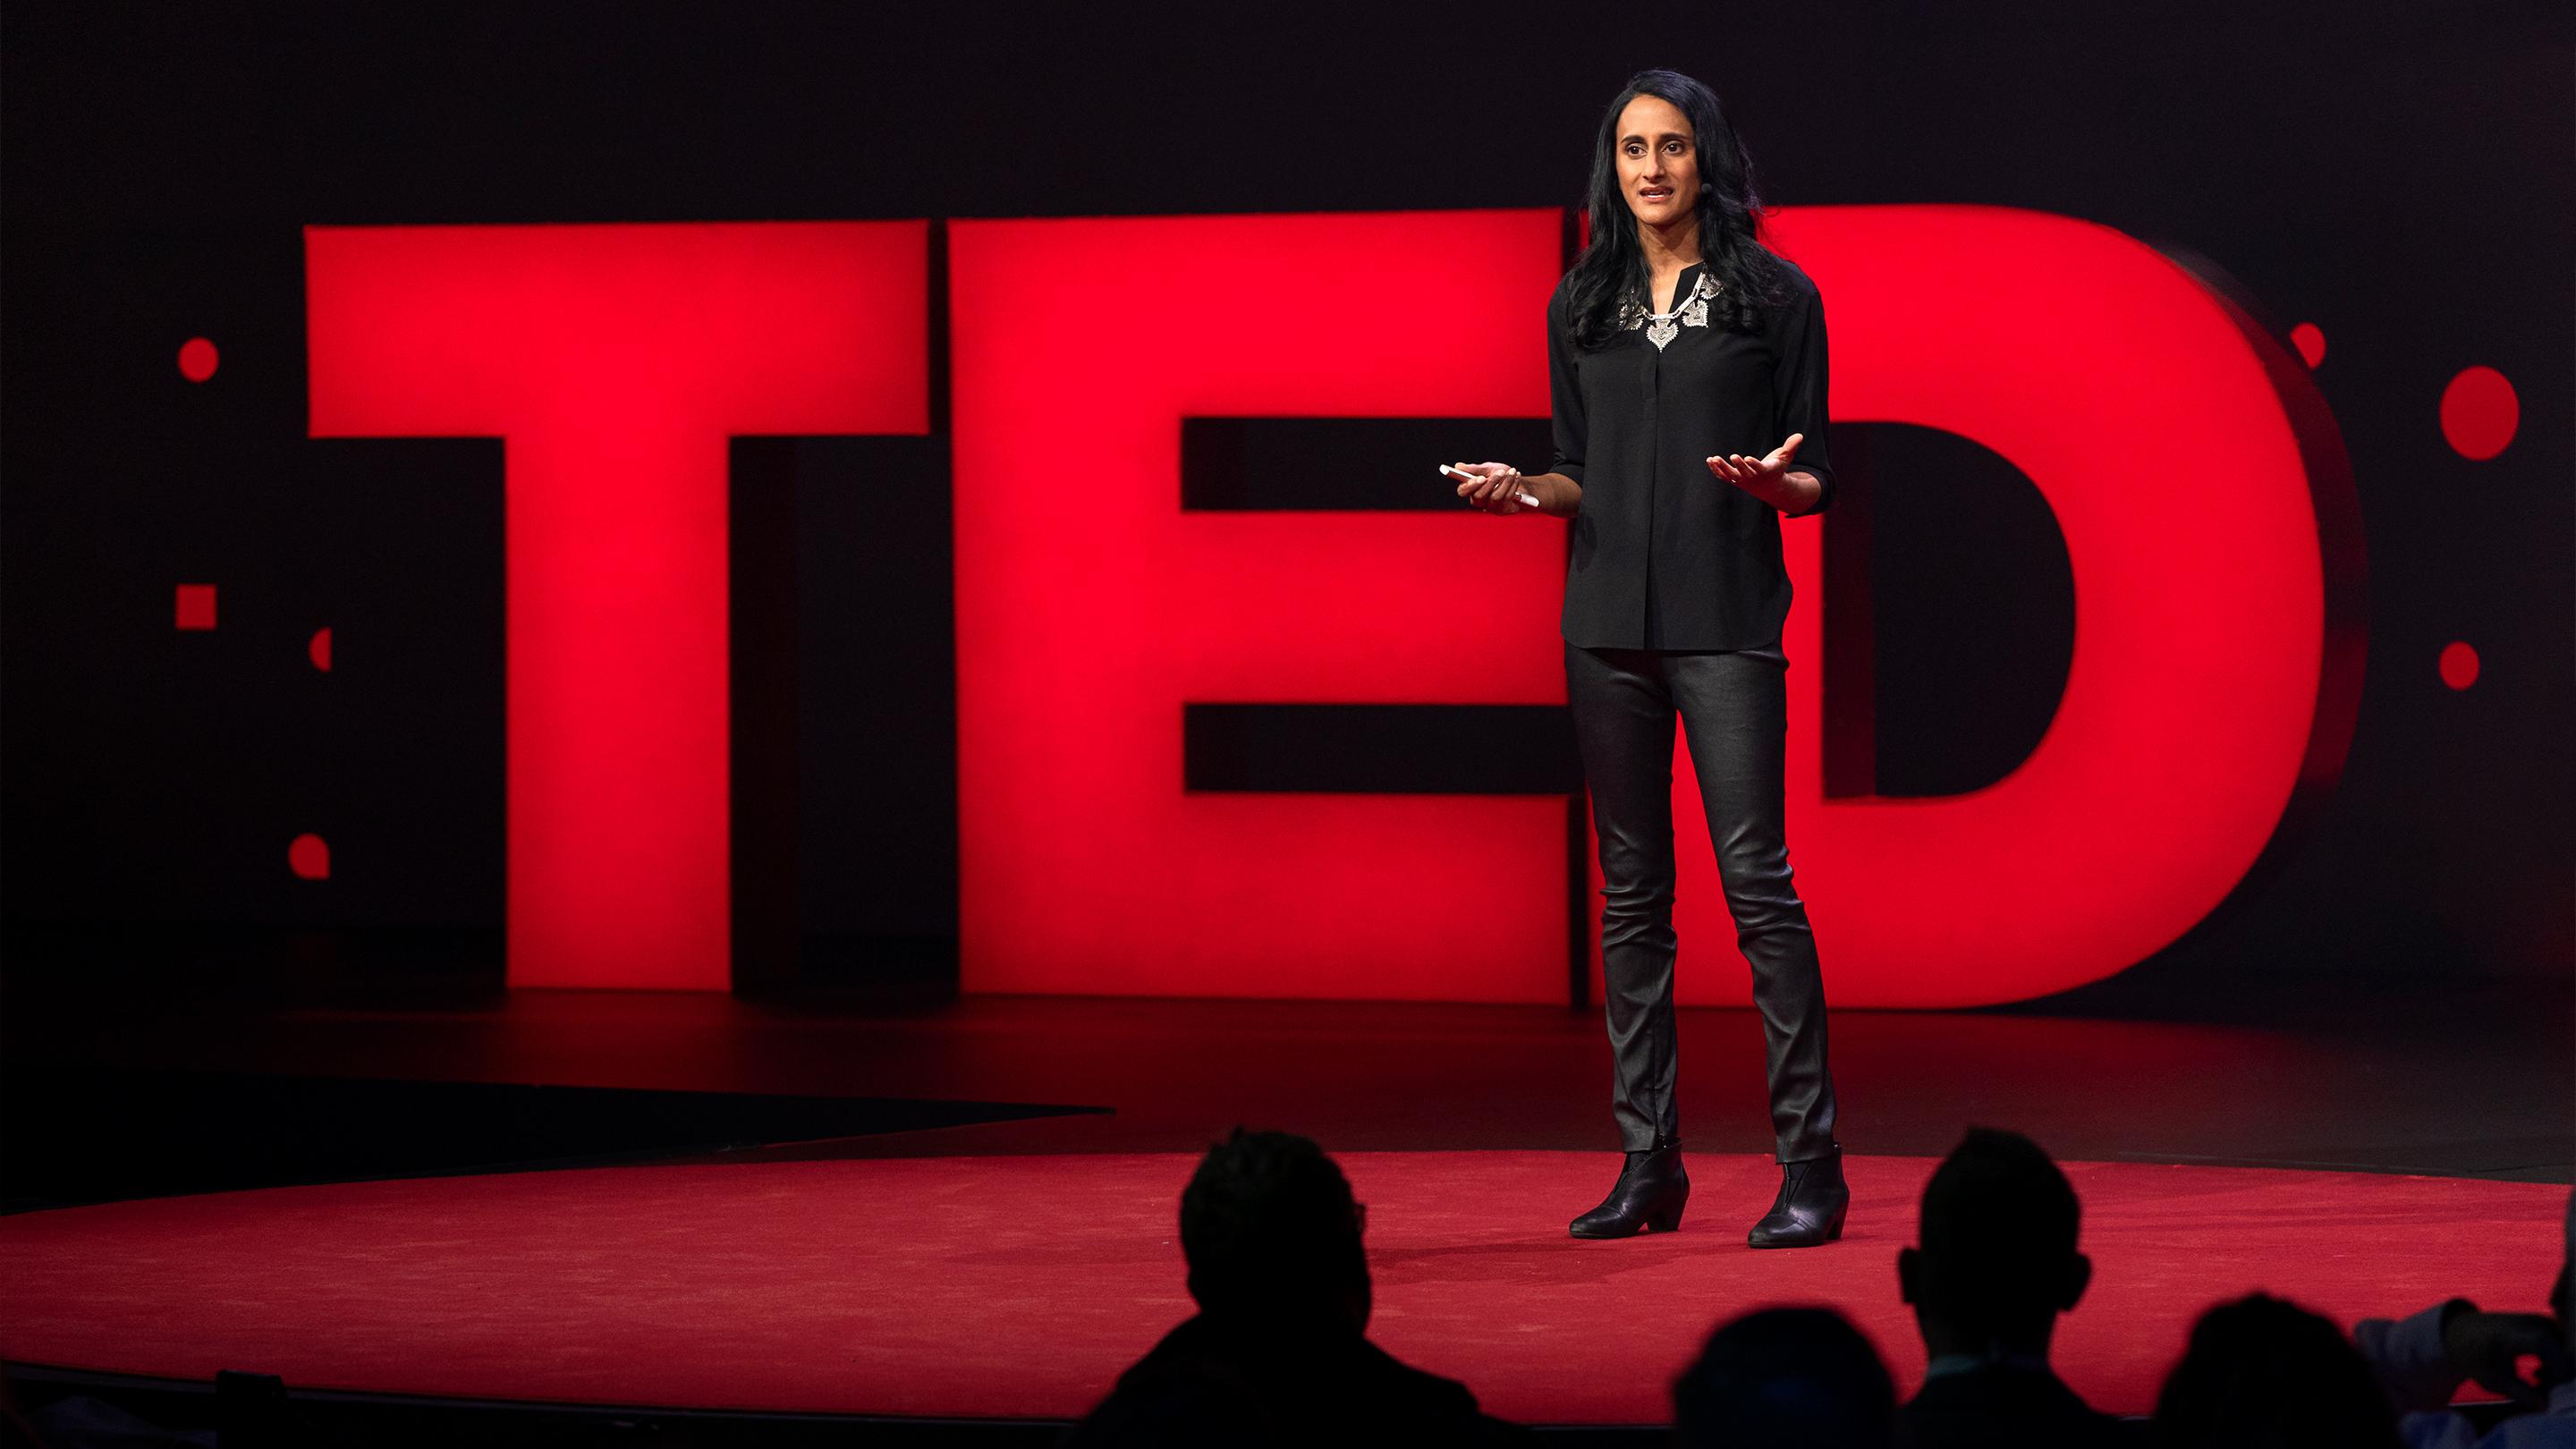 El poder de pensar en el futuro en una era temeraria | Bina Venkataraman